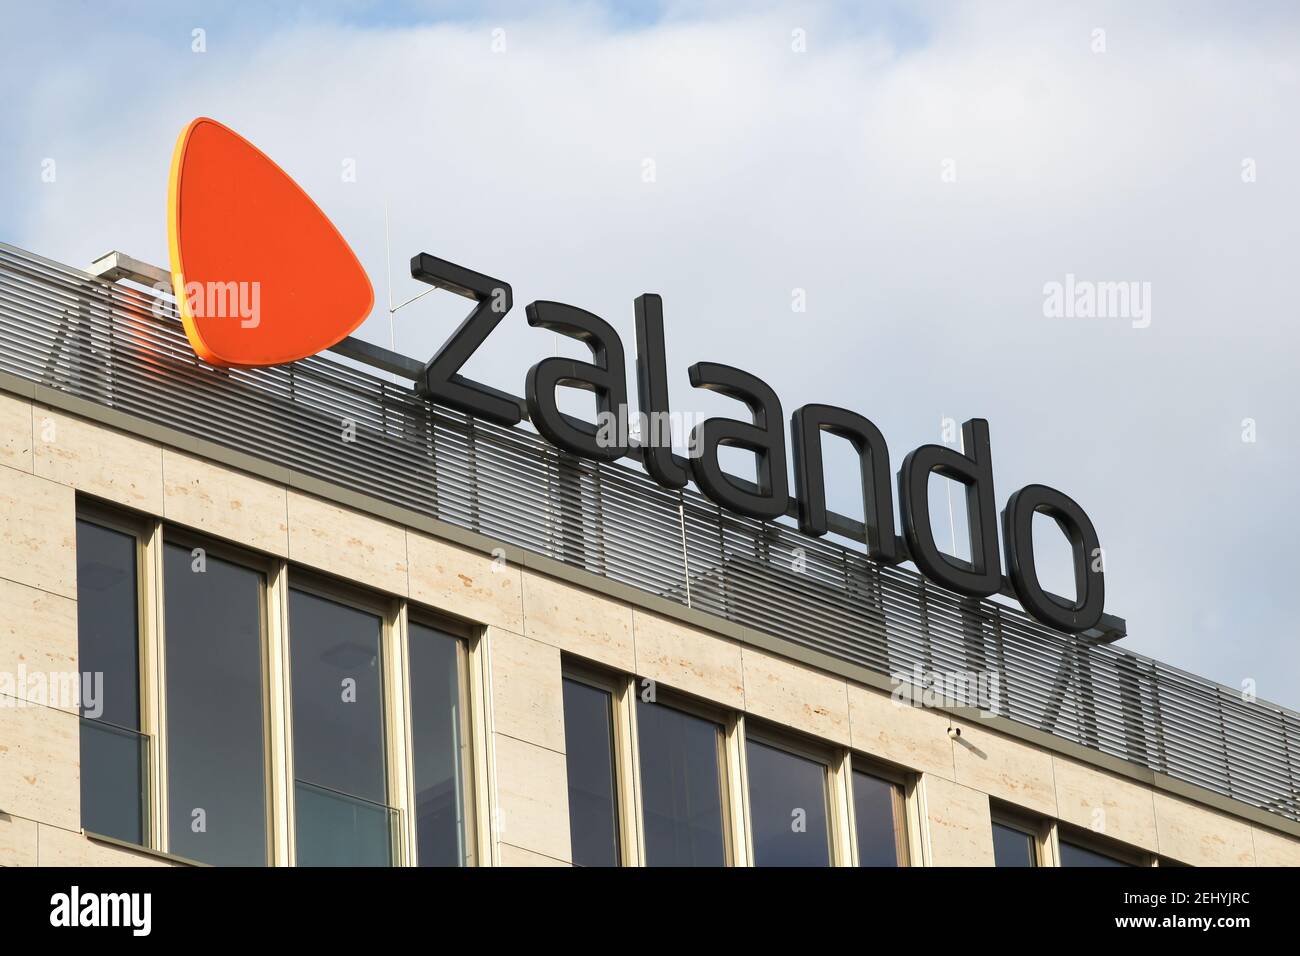 Berlin, Allemagne - 12 juillet 2020 : logo Zalando sur un bâtiment. Zalando se est une société européenne de commerce électronique basée à Berlin, en Allemagne Banque D'Images